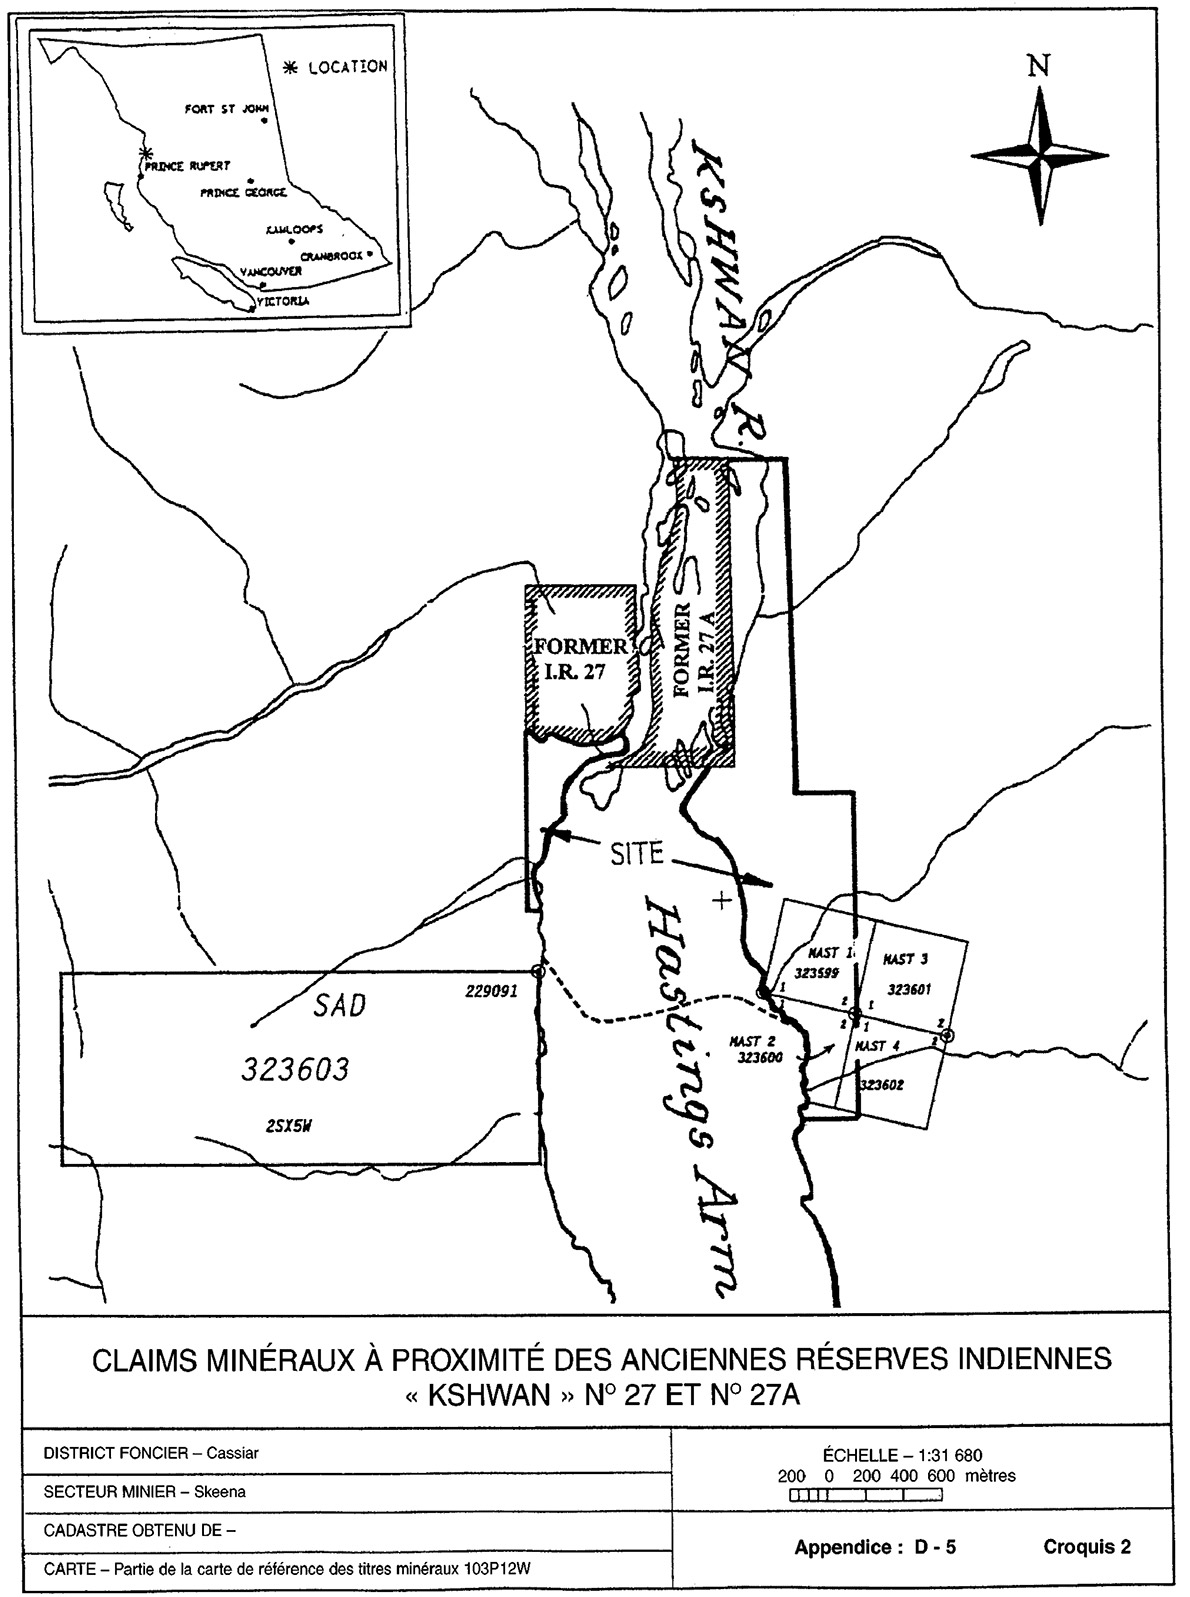 Claims minéraux à proximité des anciennes réserves indiennes « Kshwan » n° 27 et n° 27A